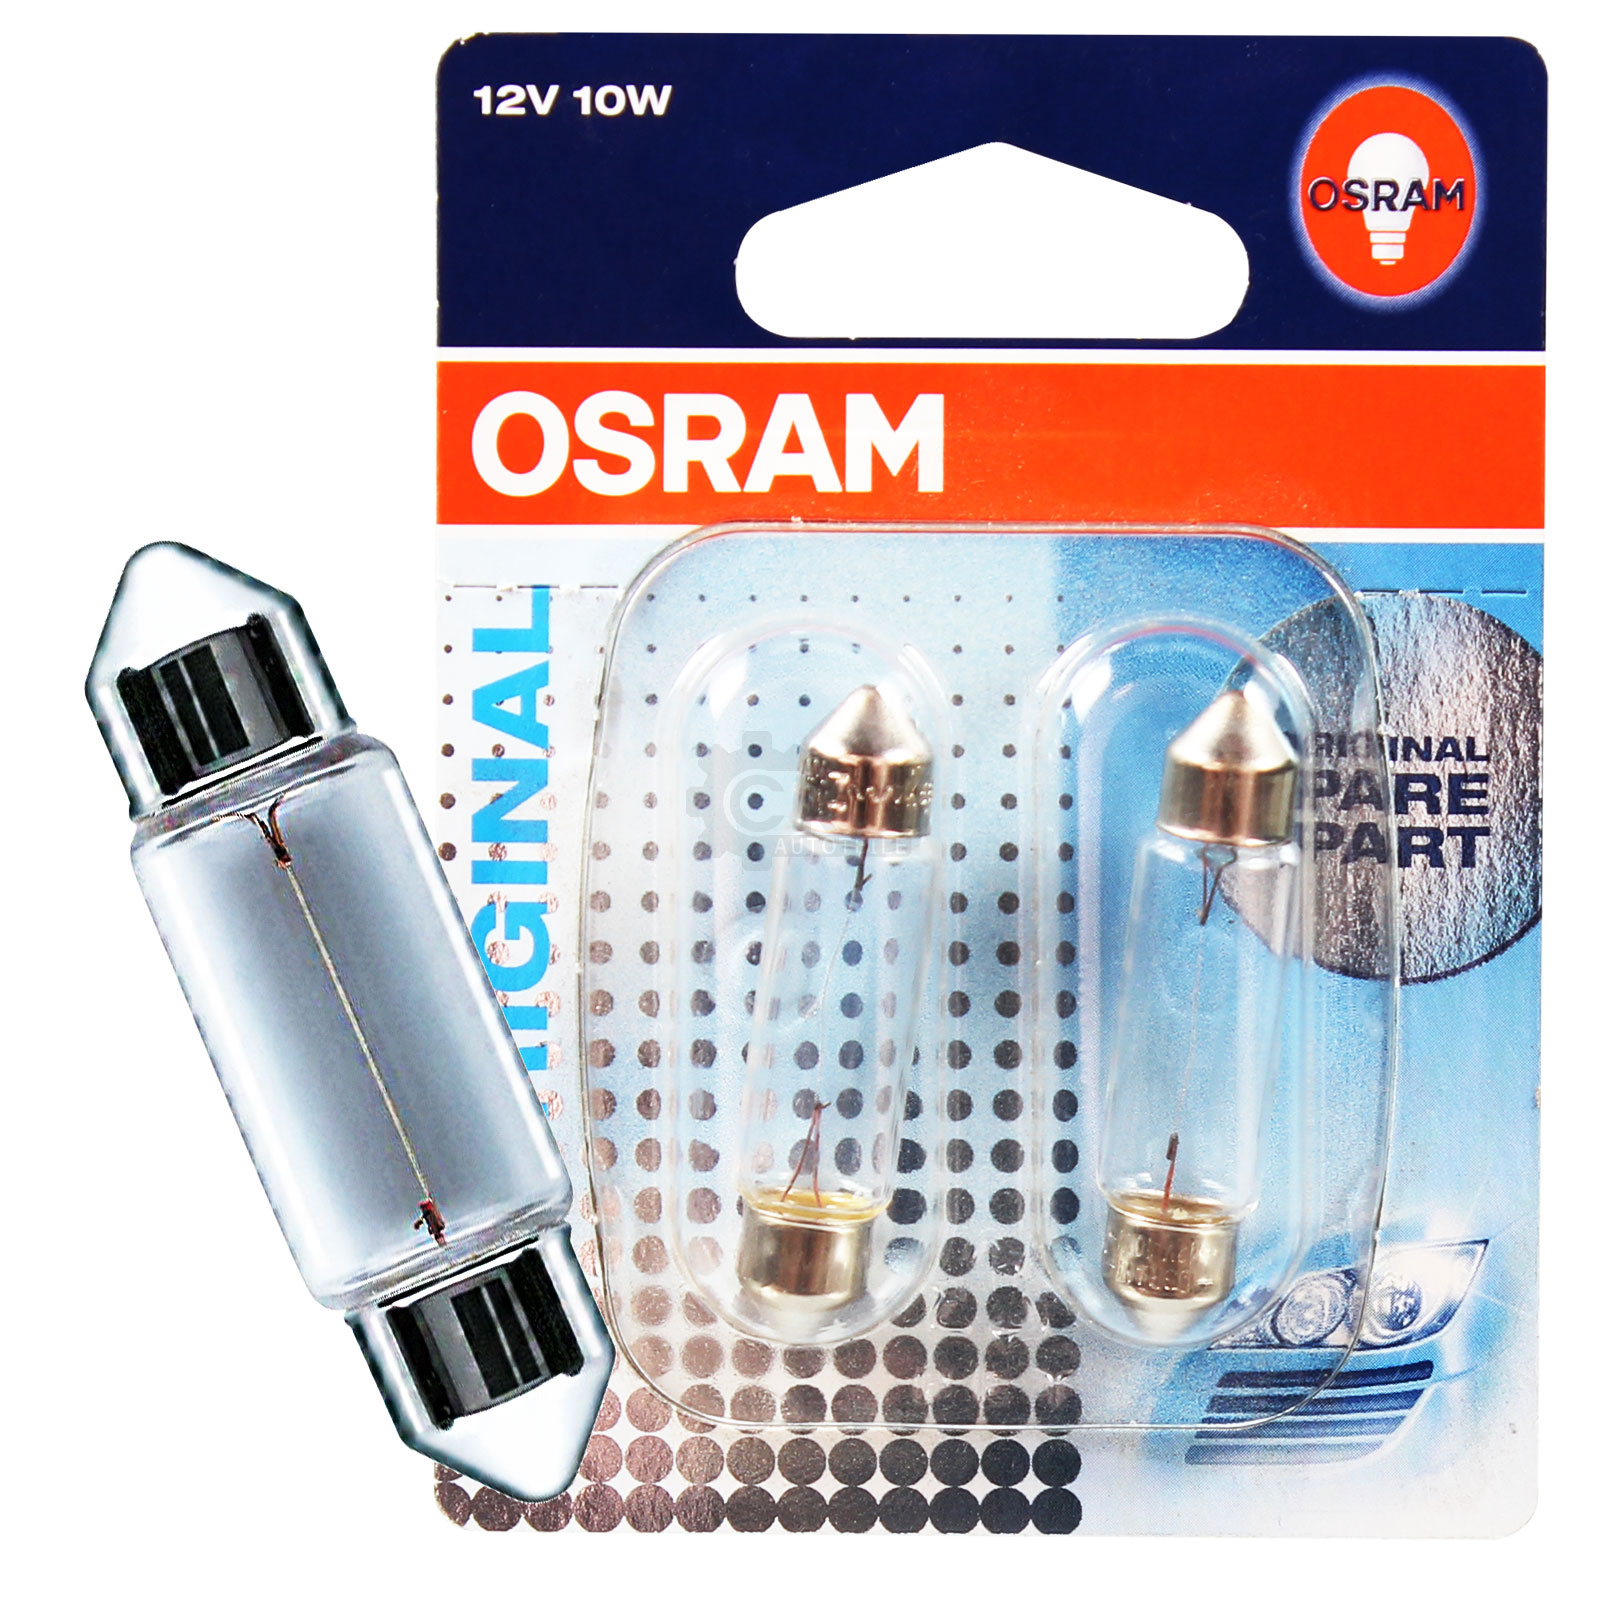 Osram Soffitte 10W 12V Sockel SV85 43 mm Lang Neu Innenbeleuchtung